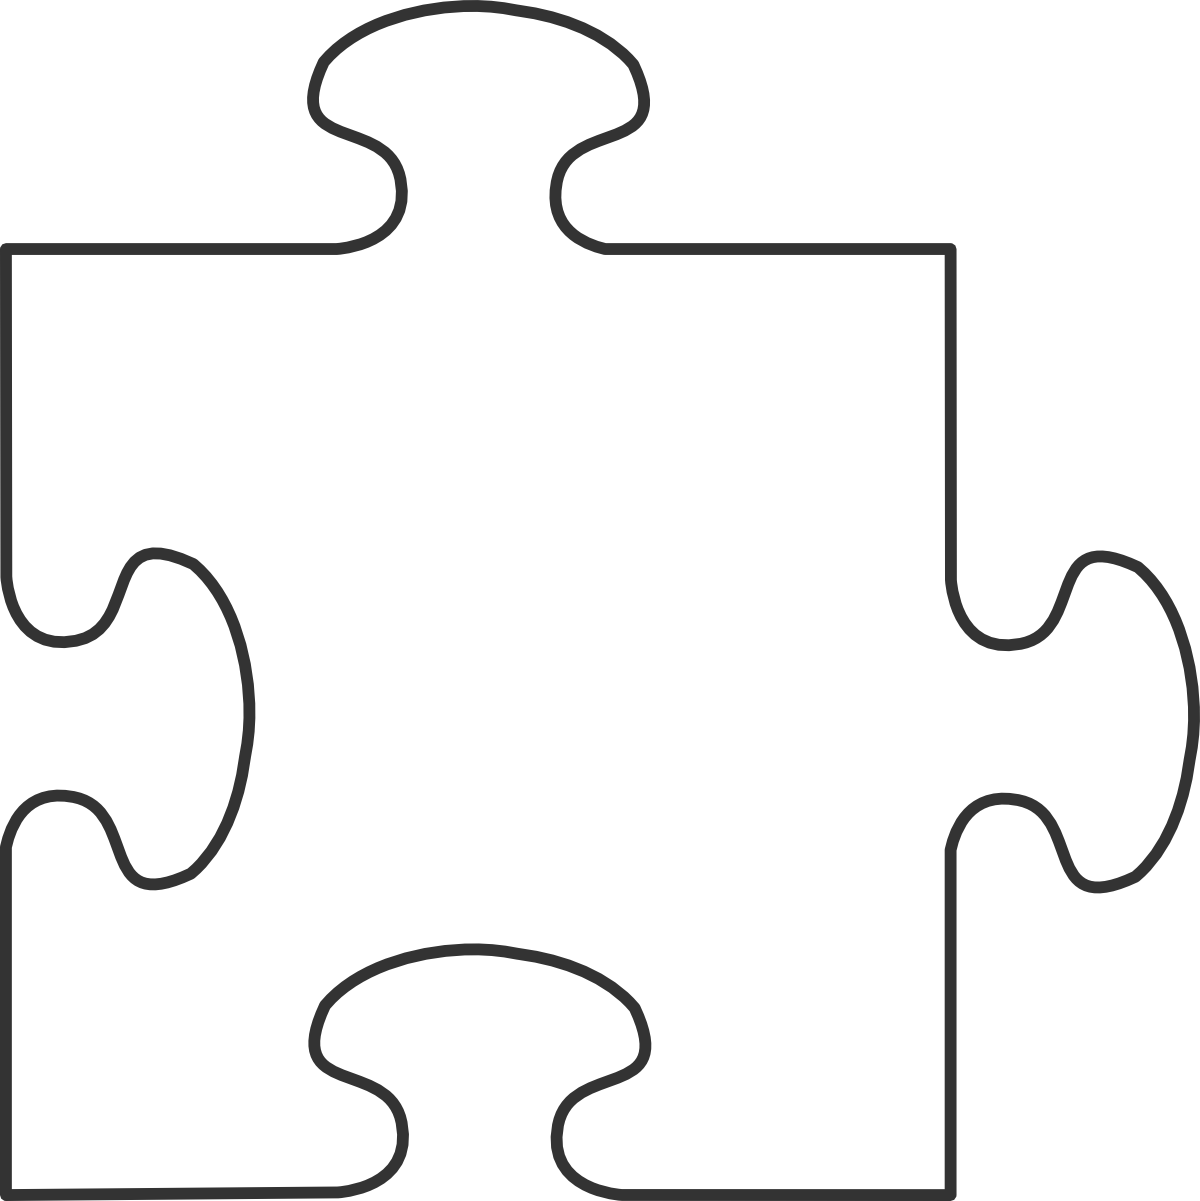 Puzzle piece clip art